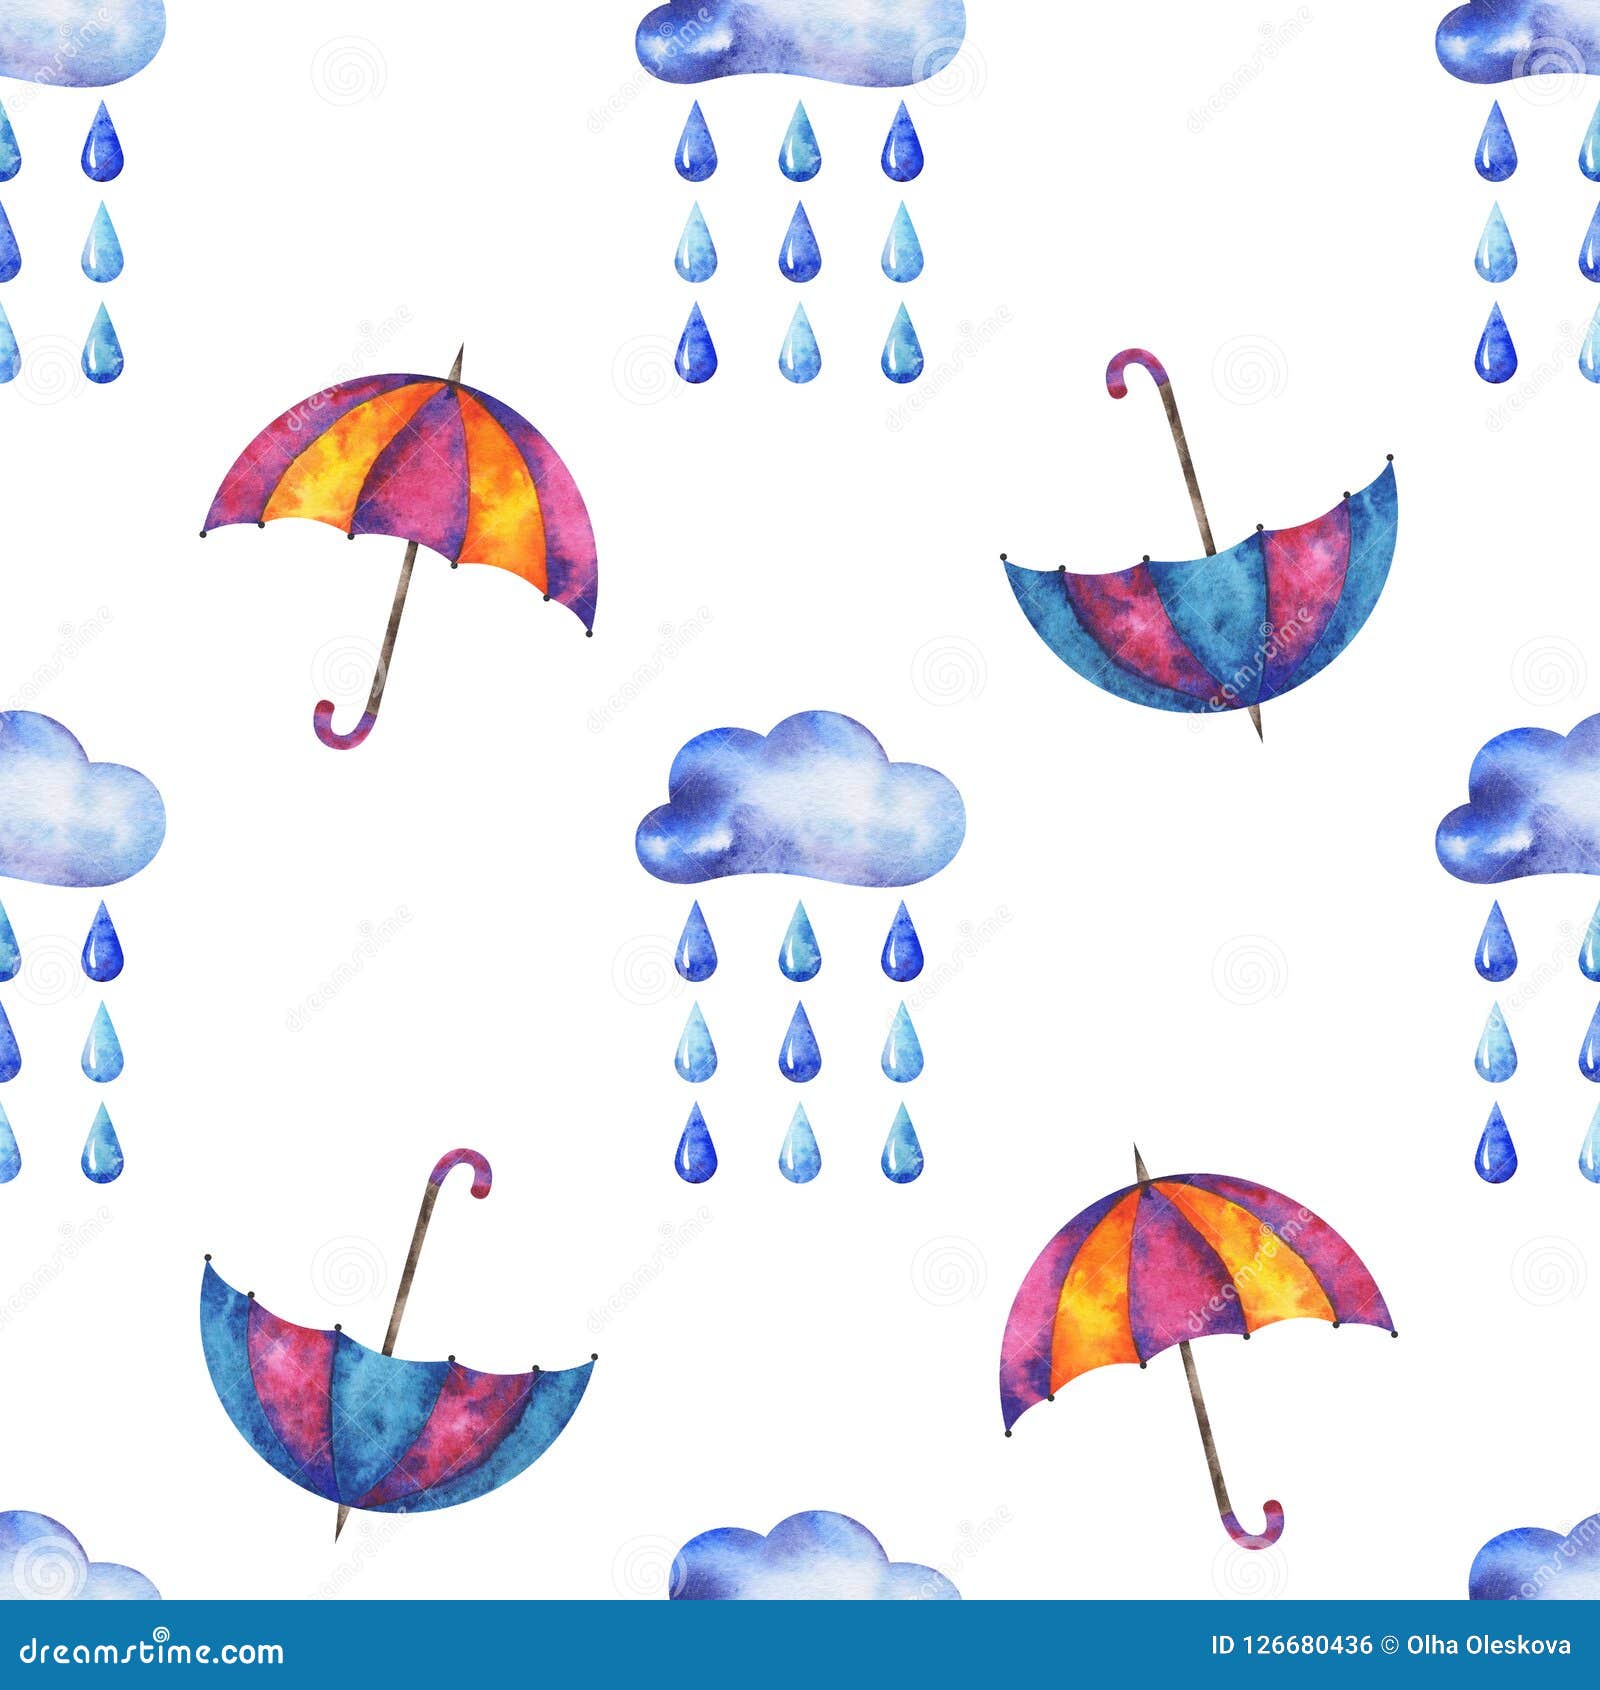 Συρμένο χέρια άνευ ραφής σχέδιο φθινοπώρου watercolor με τα σύννεφα, τις σταγόνες βροχής και την ομπρέλα στο άσπρο υπόβαθρο για το σχέδιό σας